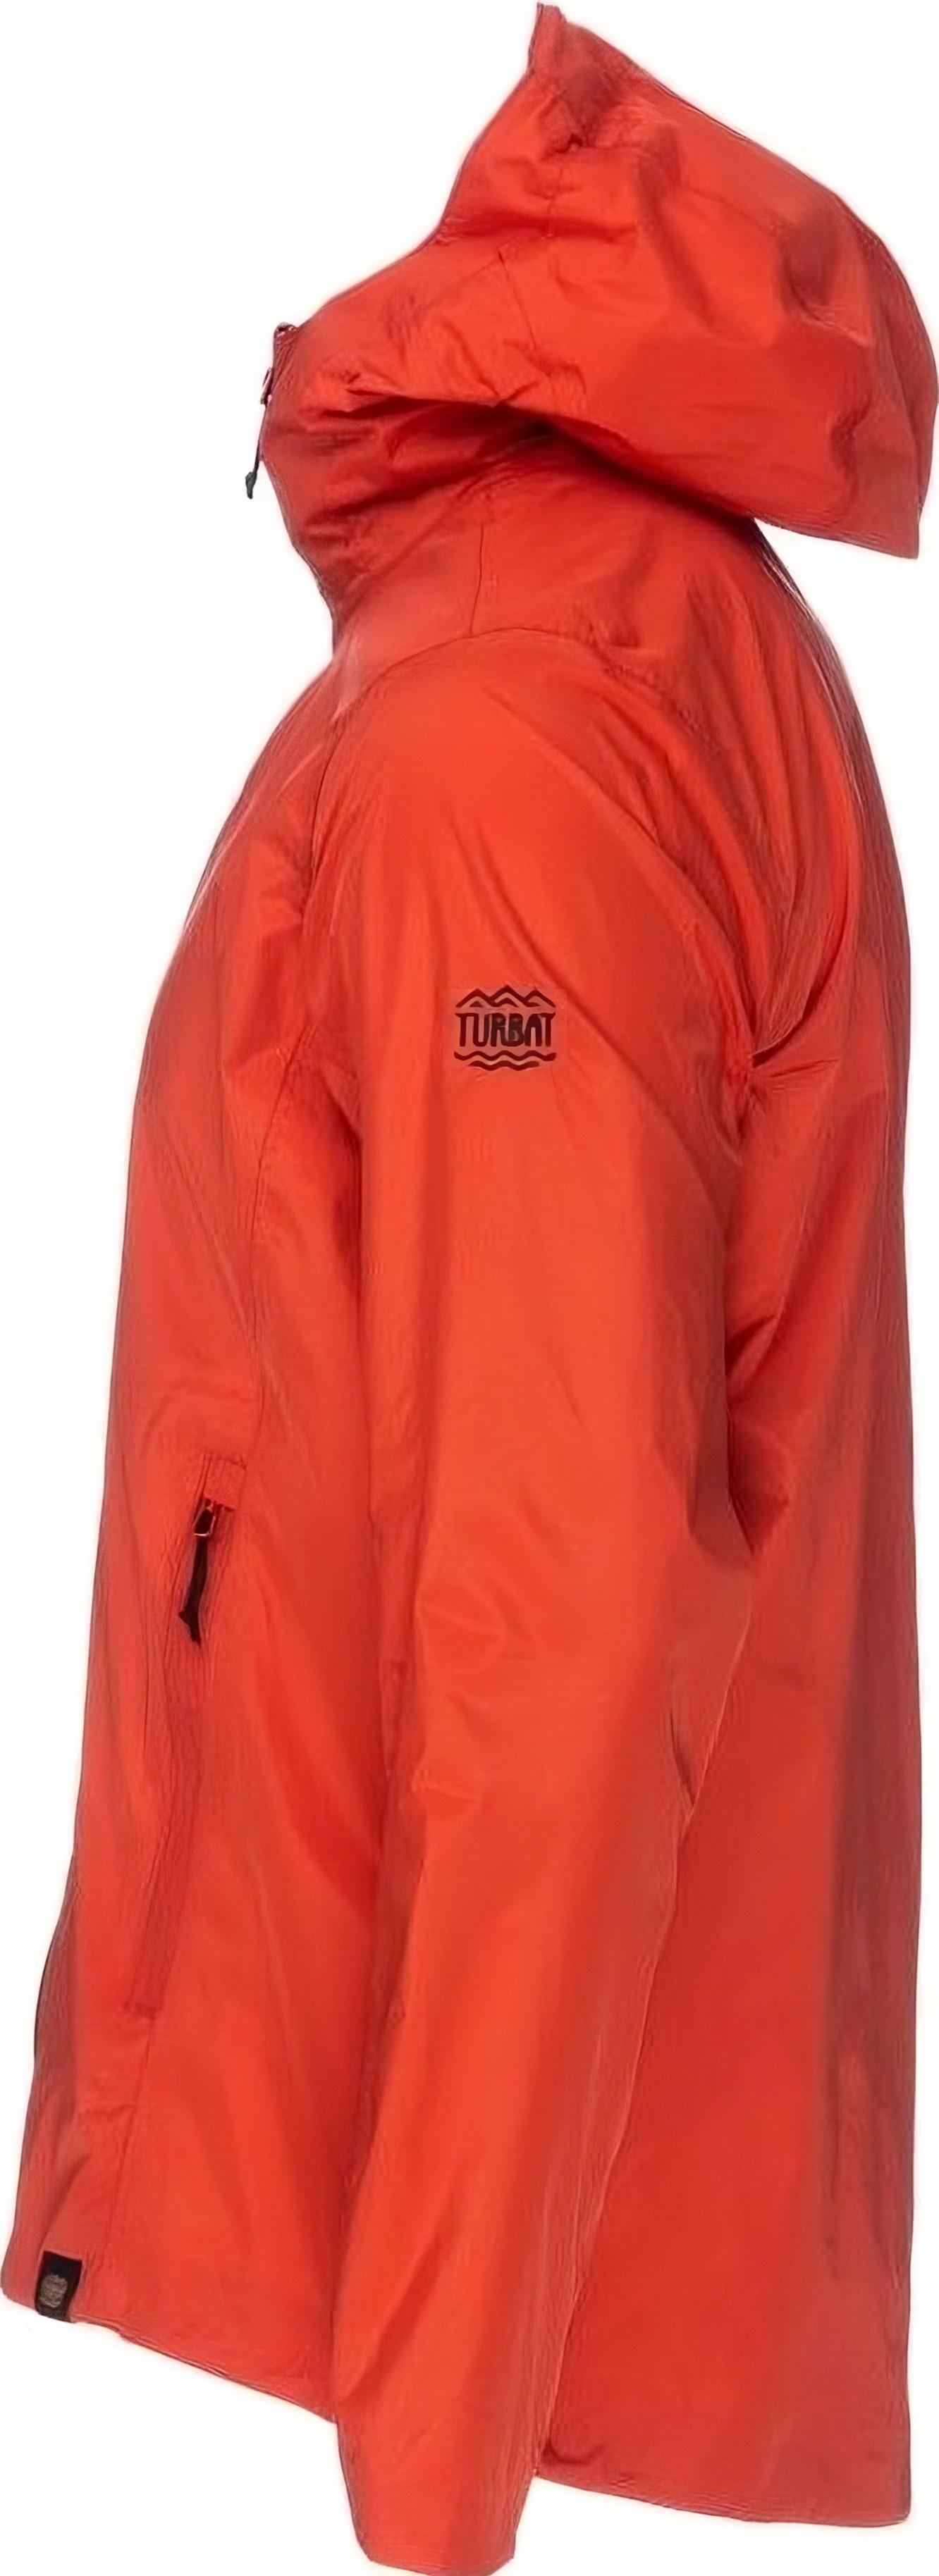 Куртка женская Turbat Isla Wmn orange red L красный фото 2